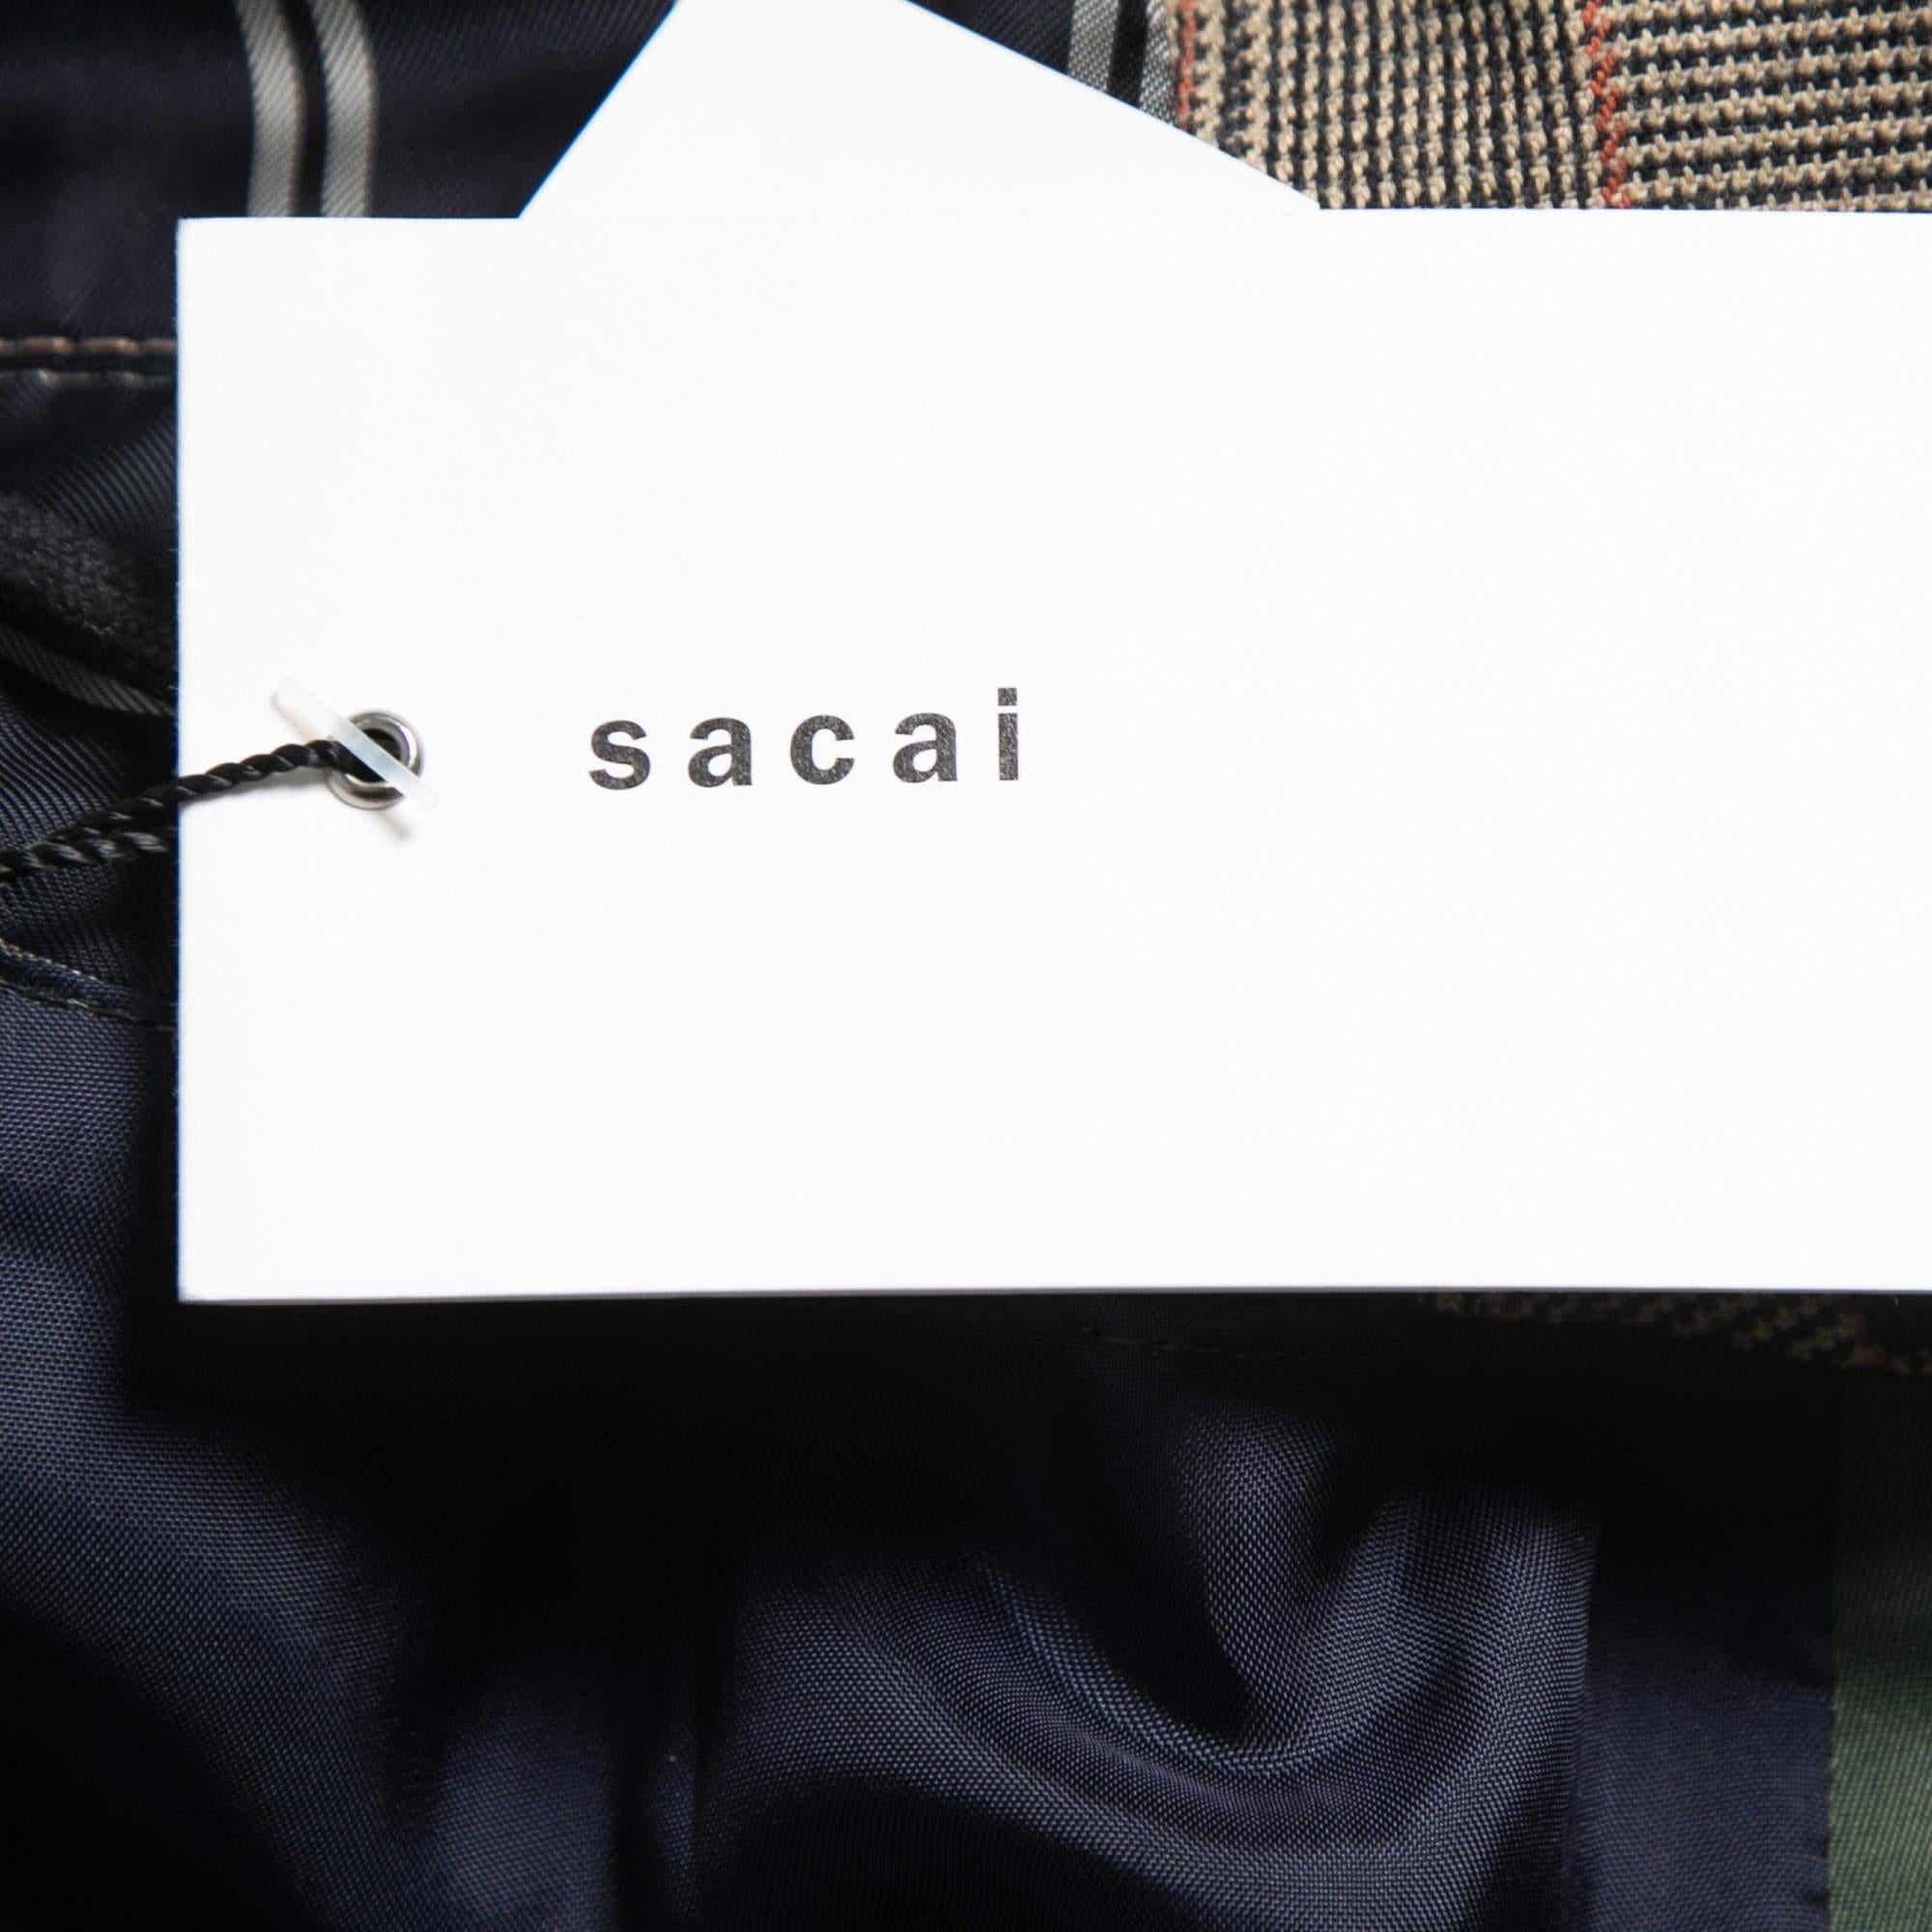 Sacai Brown/Green Glencheck Striped Cotton Blouson Jacket M 1